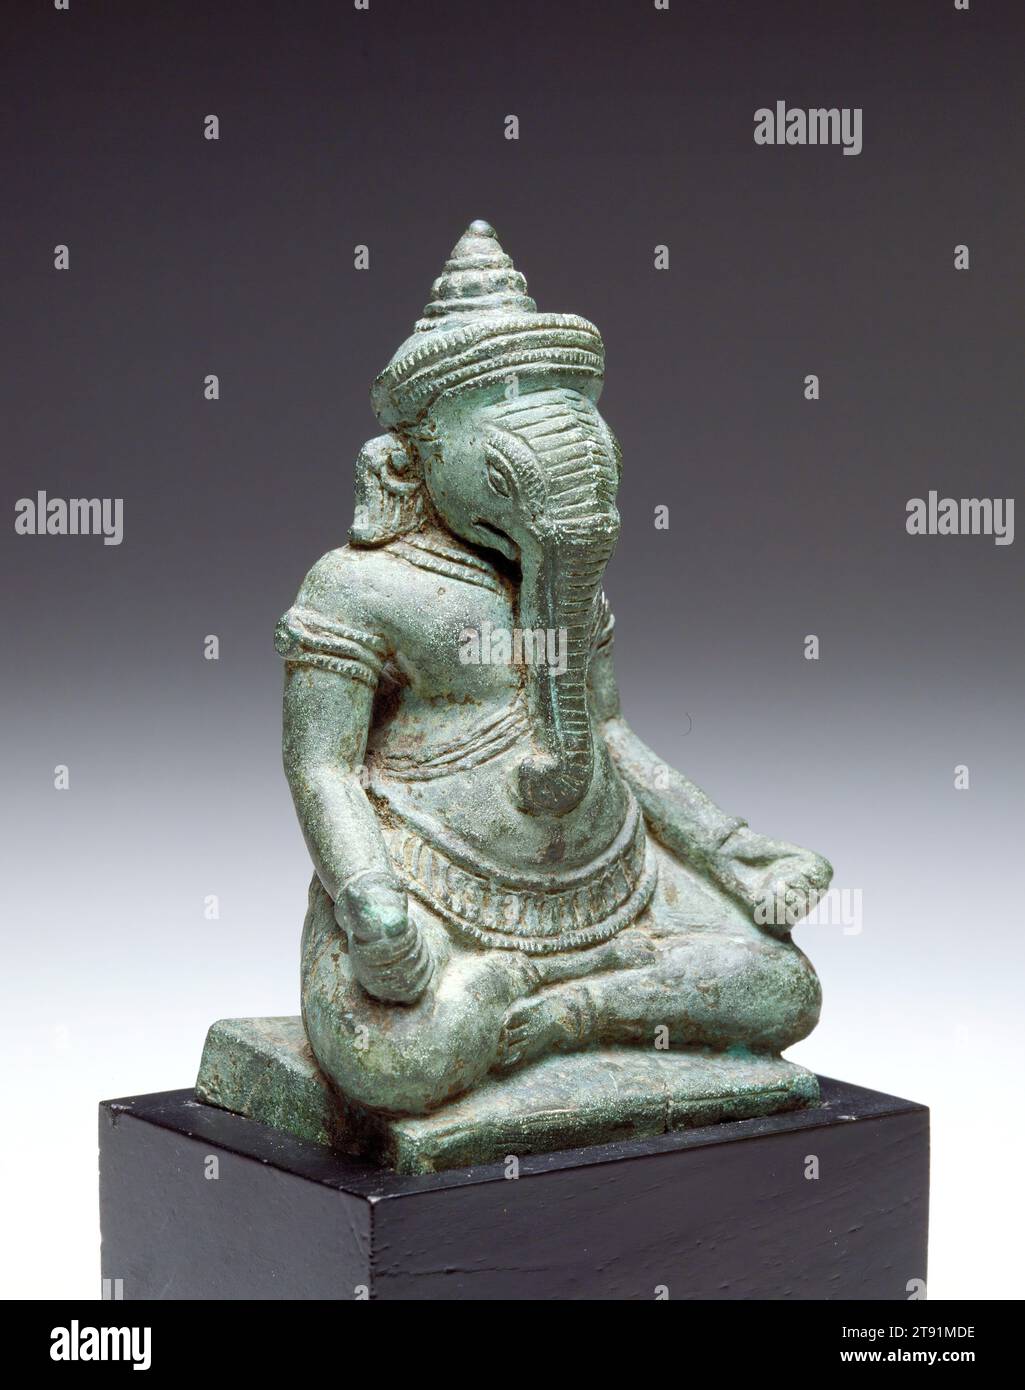 Ganesha, 12.-13. Jahrhundert, 4 x 2 3/4 x 1 15/16 Zoll (10,16 x 6,99 x 4,92 cm), Bronze, Kambodscha, 12.-13. Jahrhundert, Gott der Weisheit und Entfernung von Hindernissen sowohl sichtbar als auch unsichtbar, wird der Elefantenköpfige Ganesha zu Beginn jeder neuen Unternehmung oder Reise gerufen. Da der Geist der Gottheit in seinem Gleichnis liegt, sollte diese kleine Bronzestatue daher ein perfekter Reisebegleiter sein, der den Besitzer zu klugen Entscheidungen und sicheren Wegen führt Stockfoto